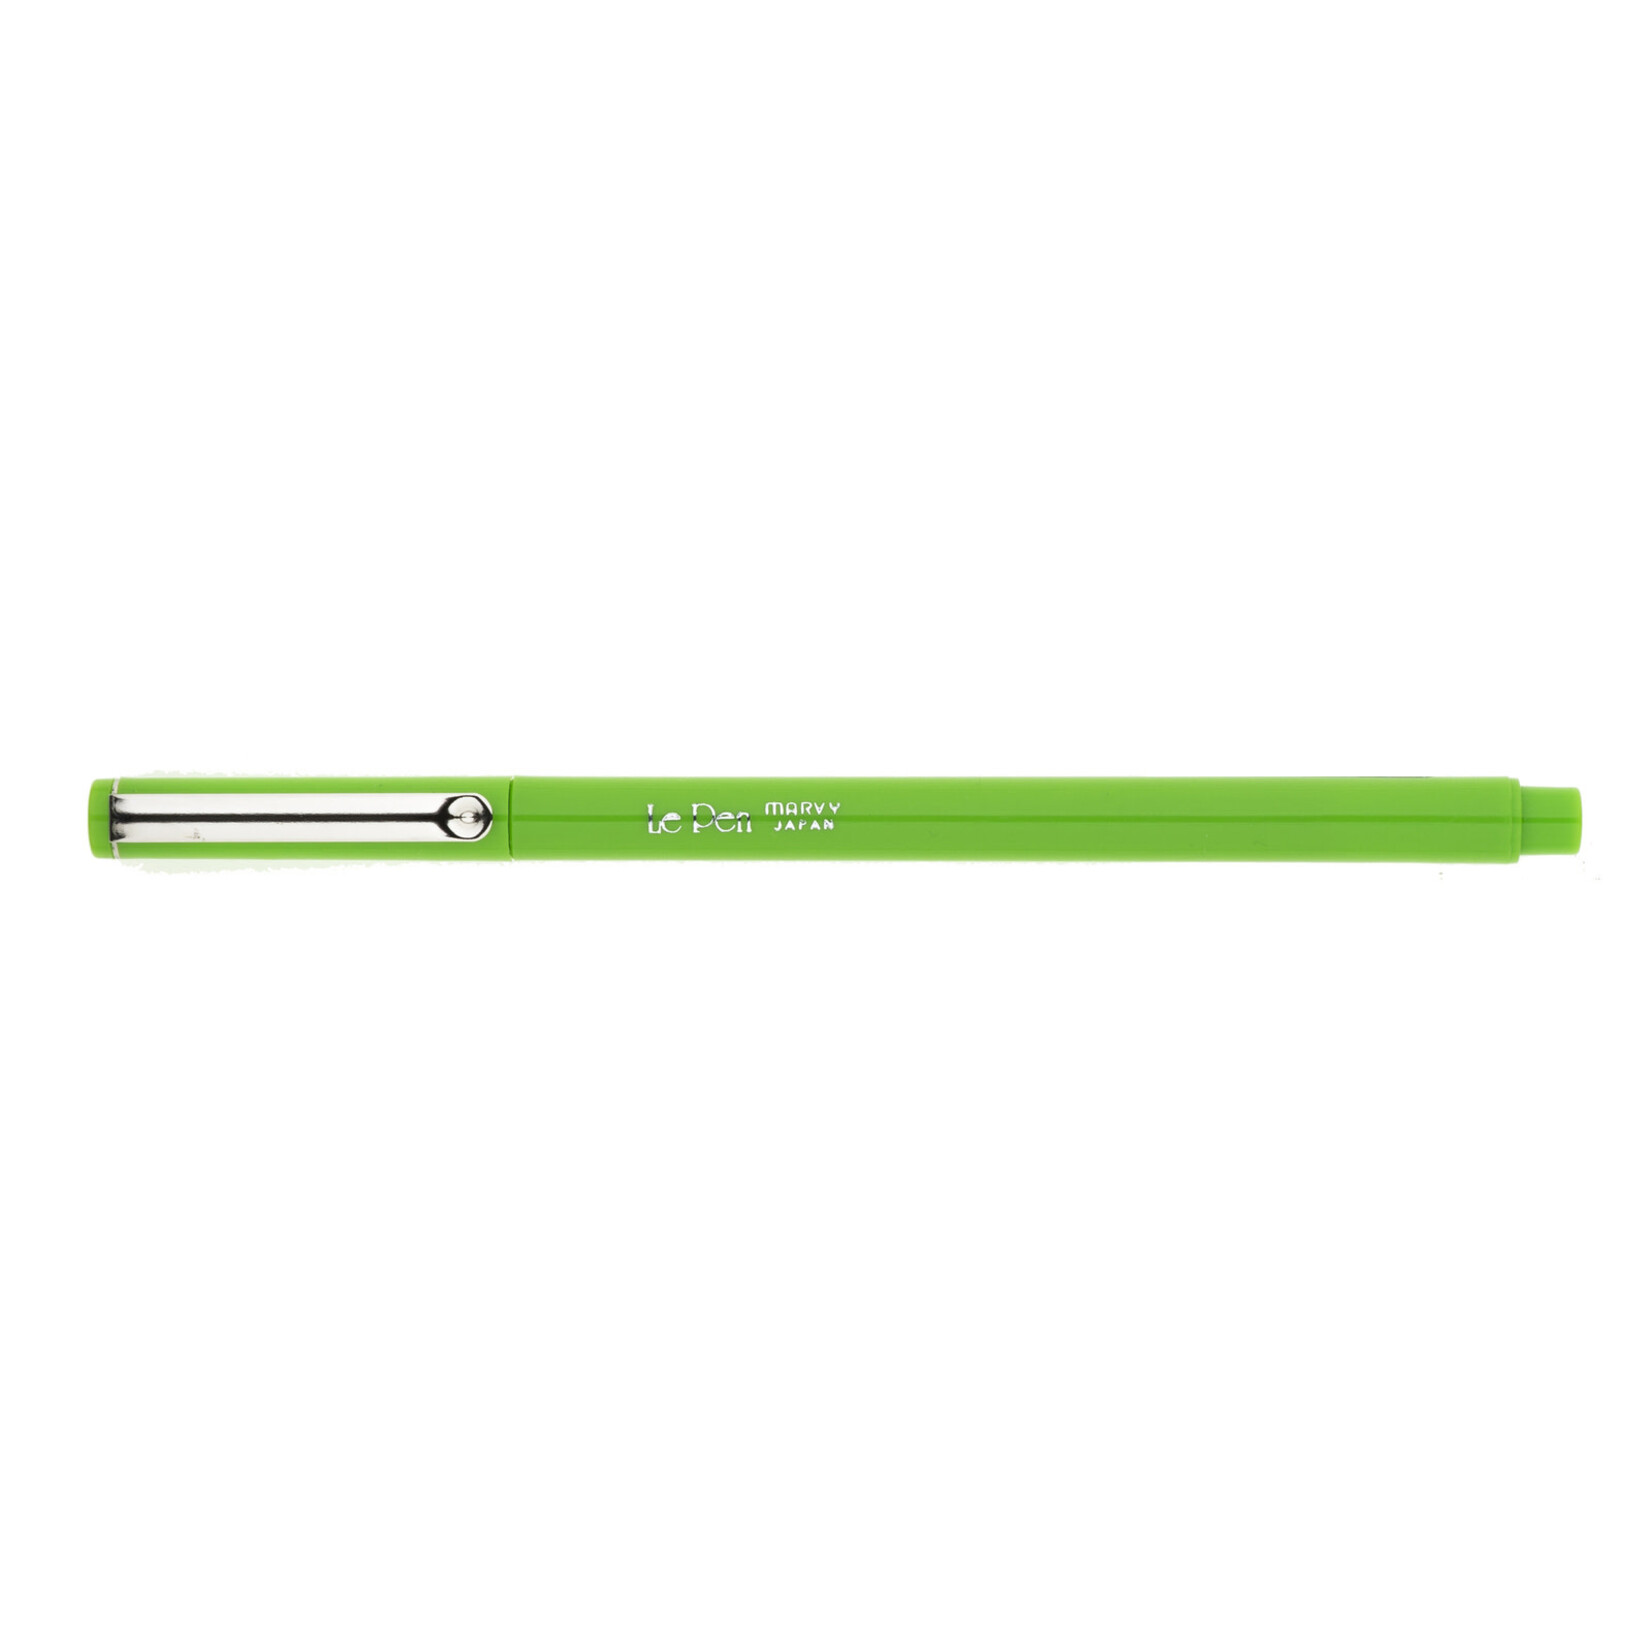 Uchida Le Pen Marker Light Green .3mm